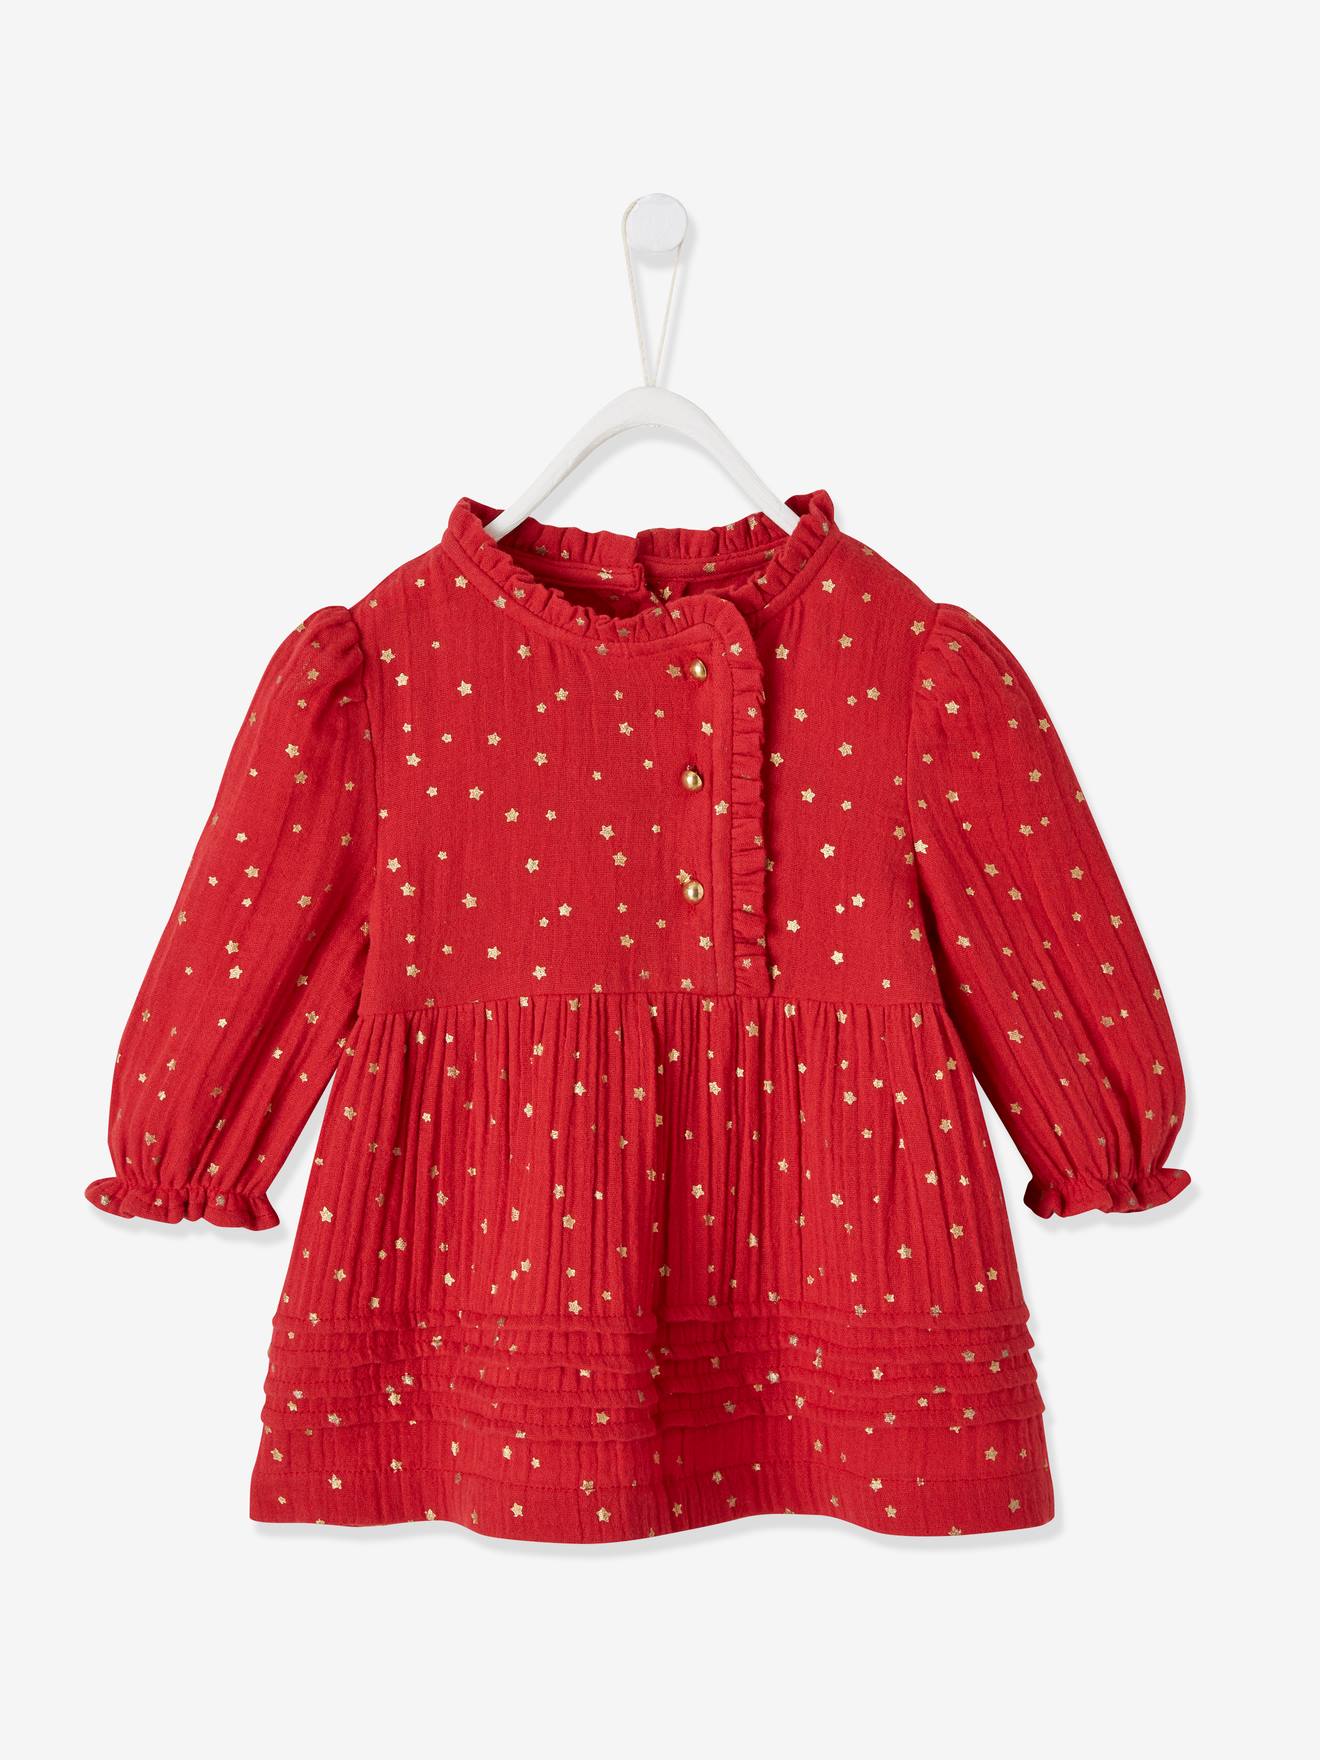 VERTBAUDET Vestido de gasa de algodón con abertura asimétrica, bebé rojo oscuro estampado